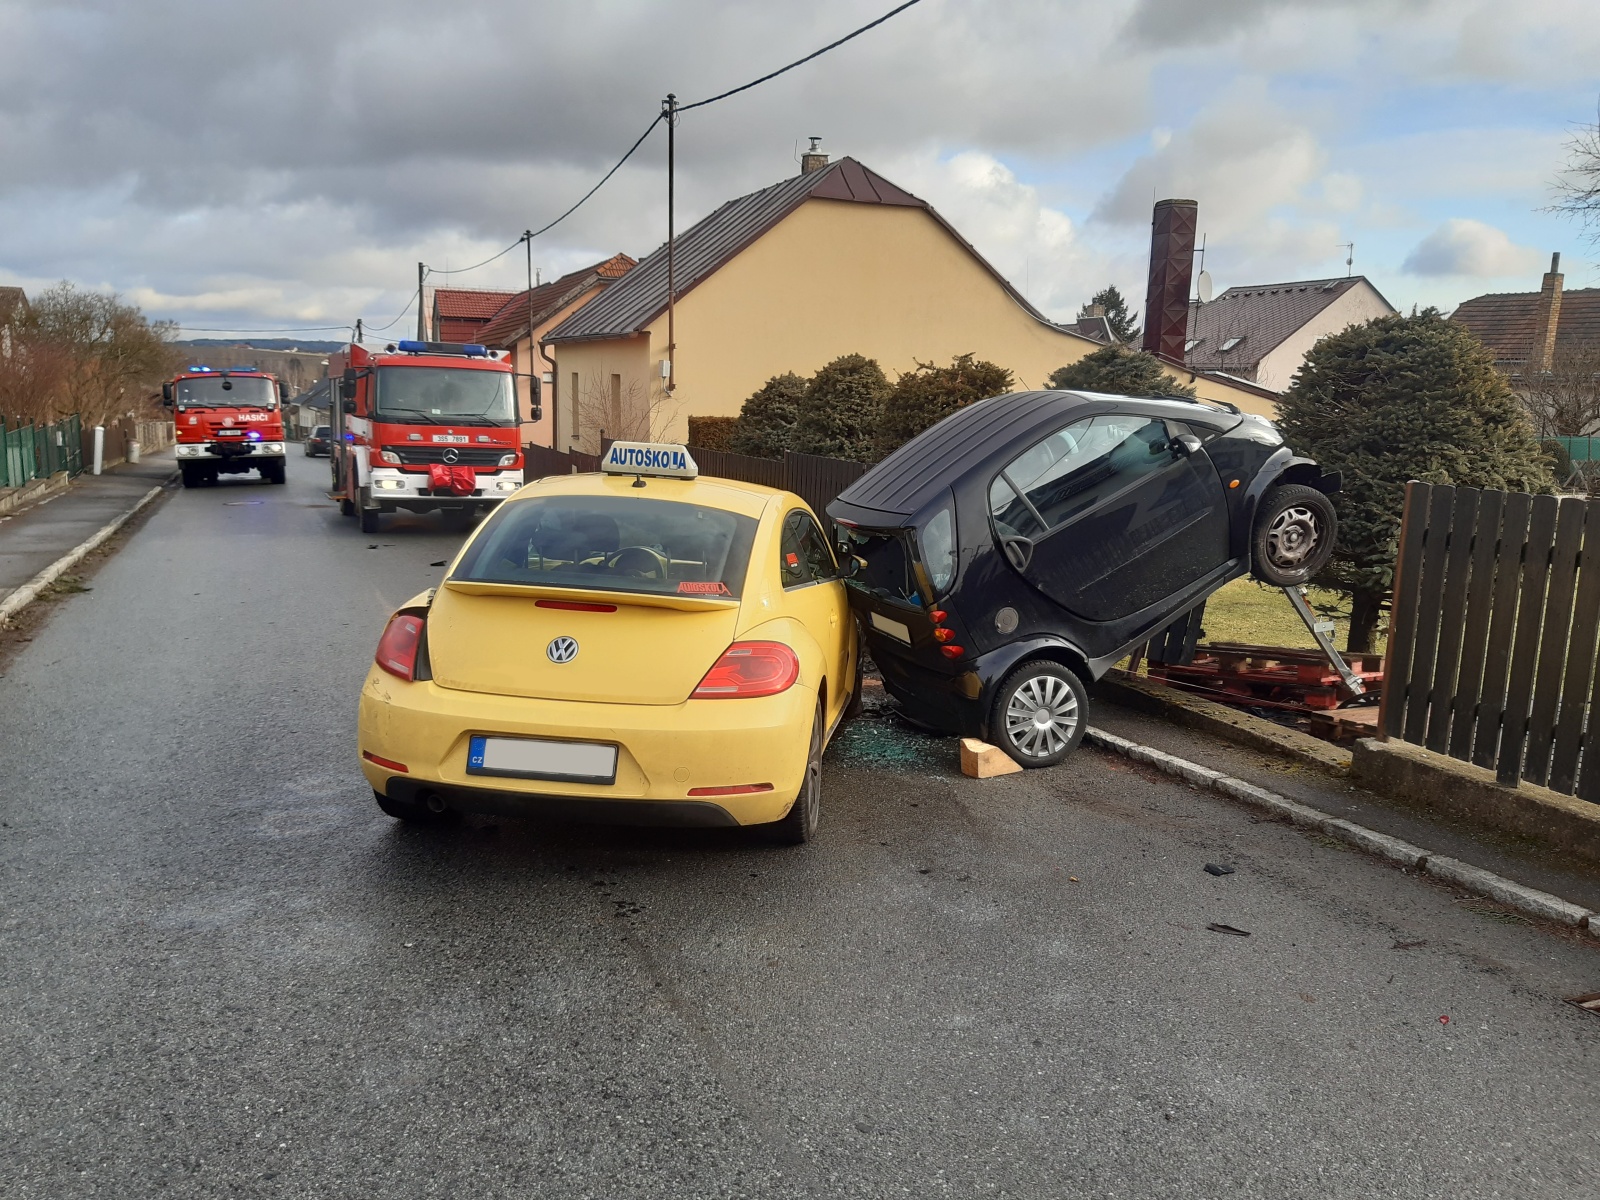 014-Dopravní nehoda dvou osobních vozidel v Rožmitálu pod Třemšínem.jpg